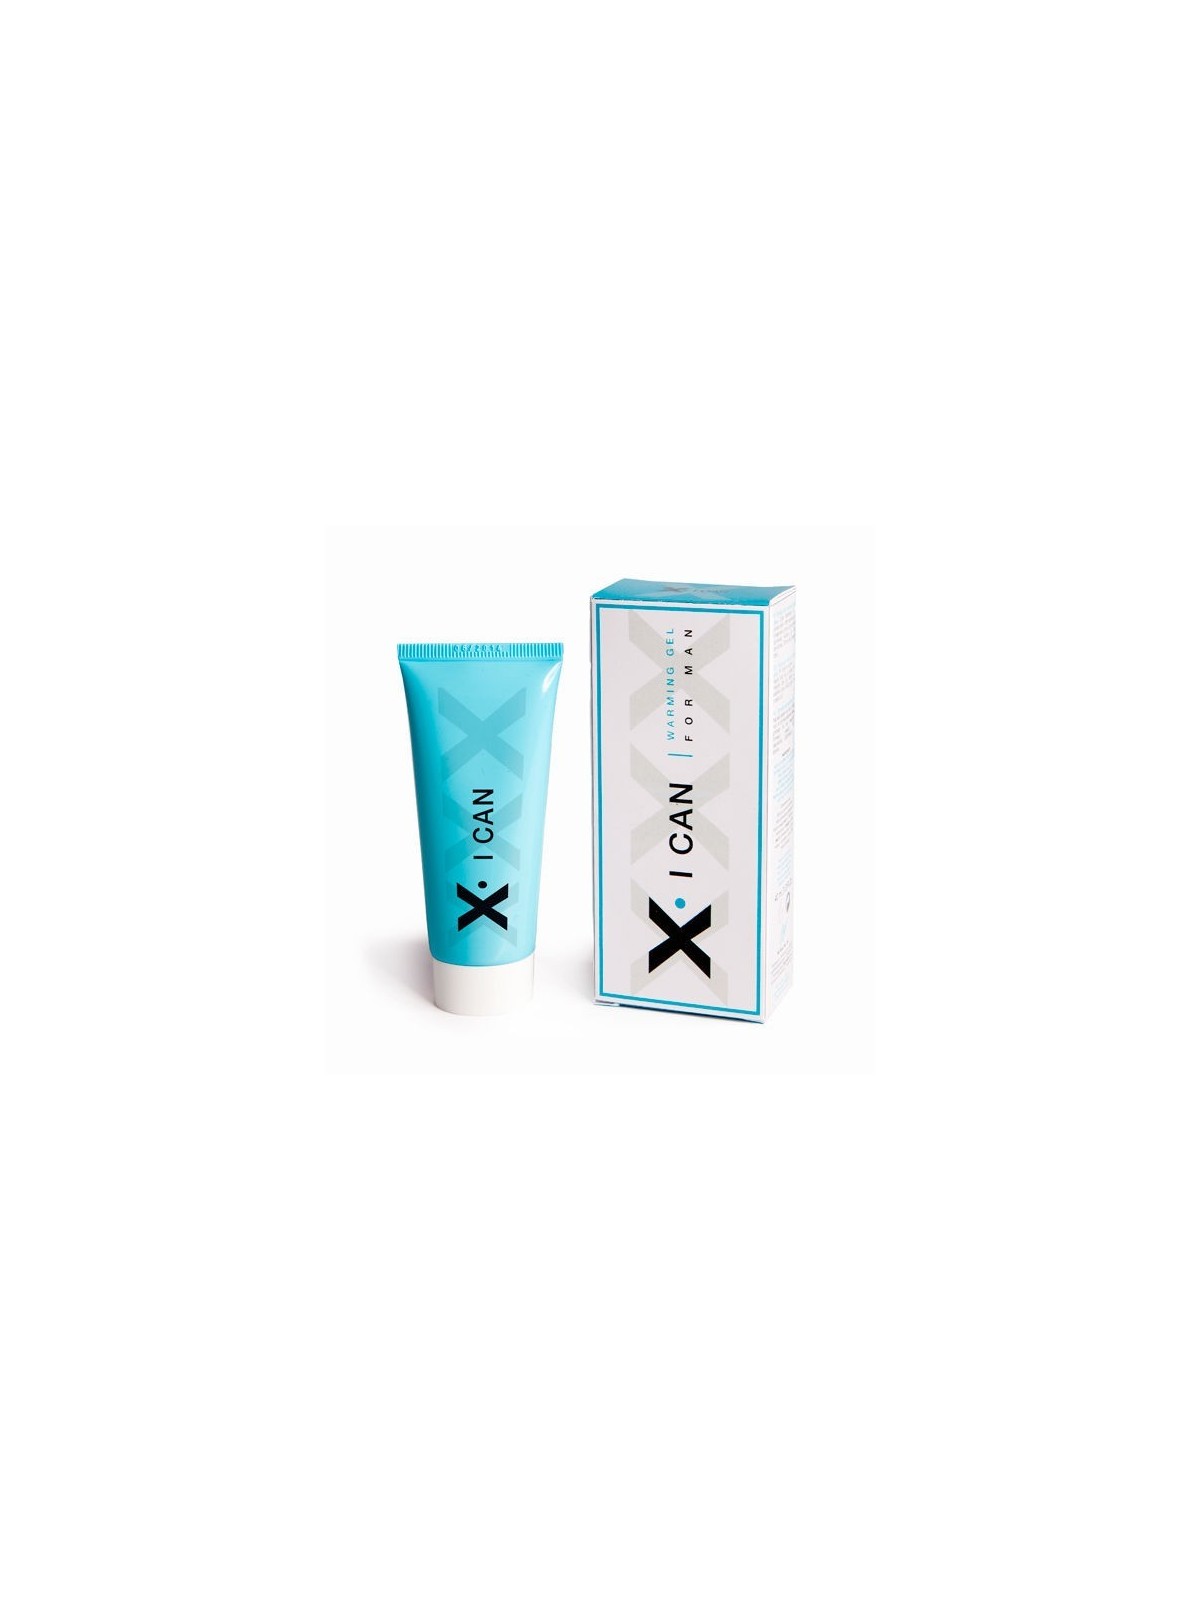 X I Can Crema Efecto Calor Para El Pene - Comprar Potenciador erección Ruf - Potenciadores de erección (1)